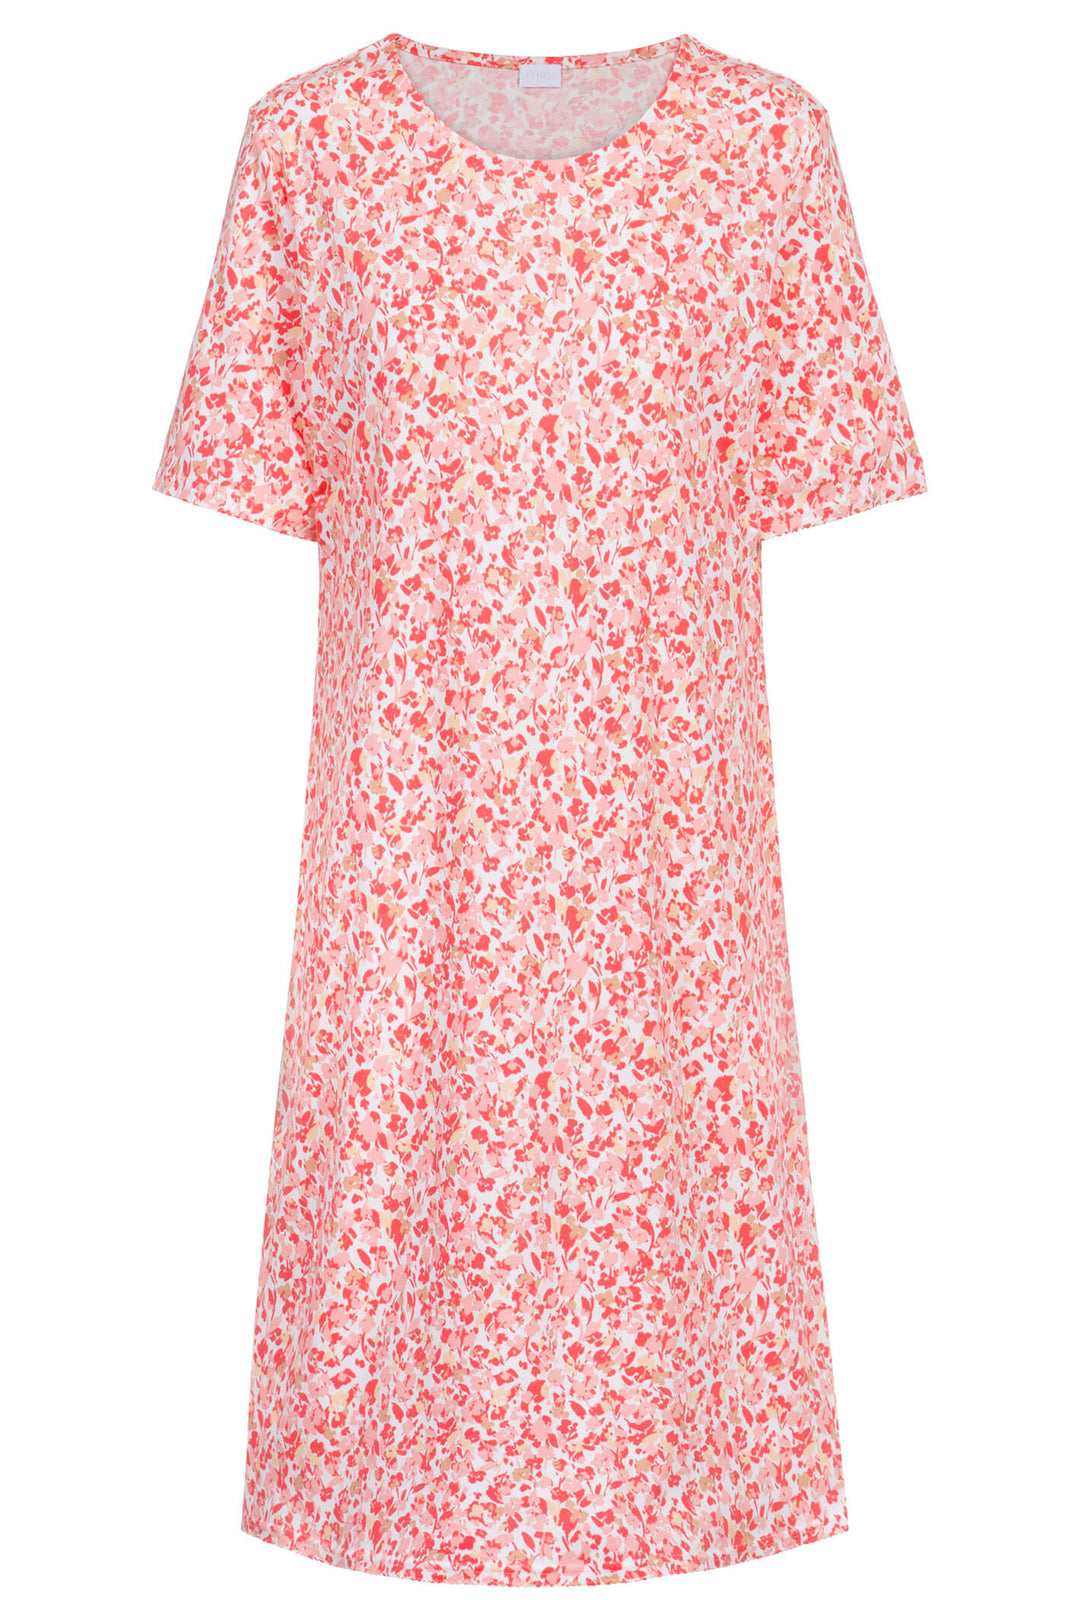 Mey 12015 794 Petal Pink Print Short Sleeve Sleepshirt - Shirley Allum Boutique